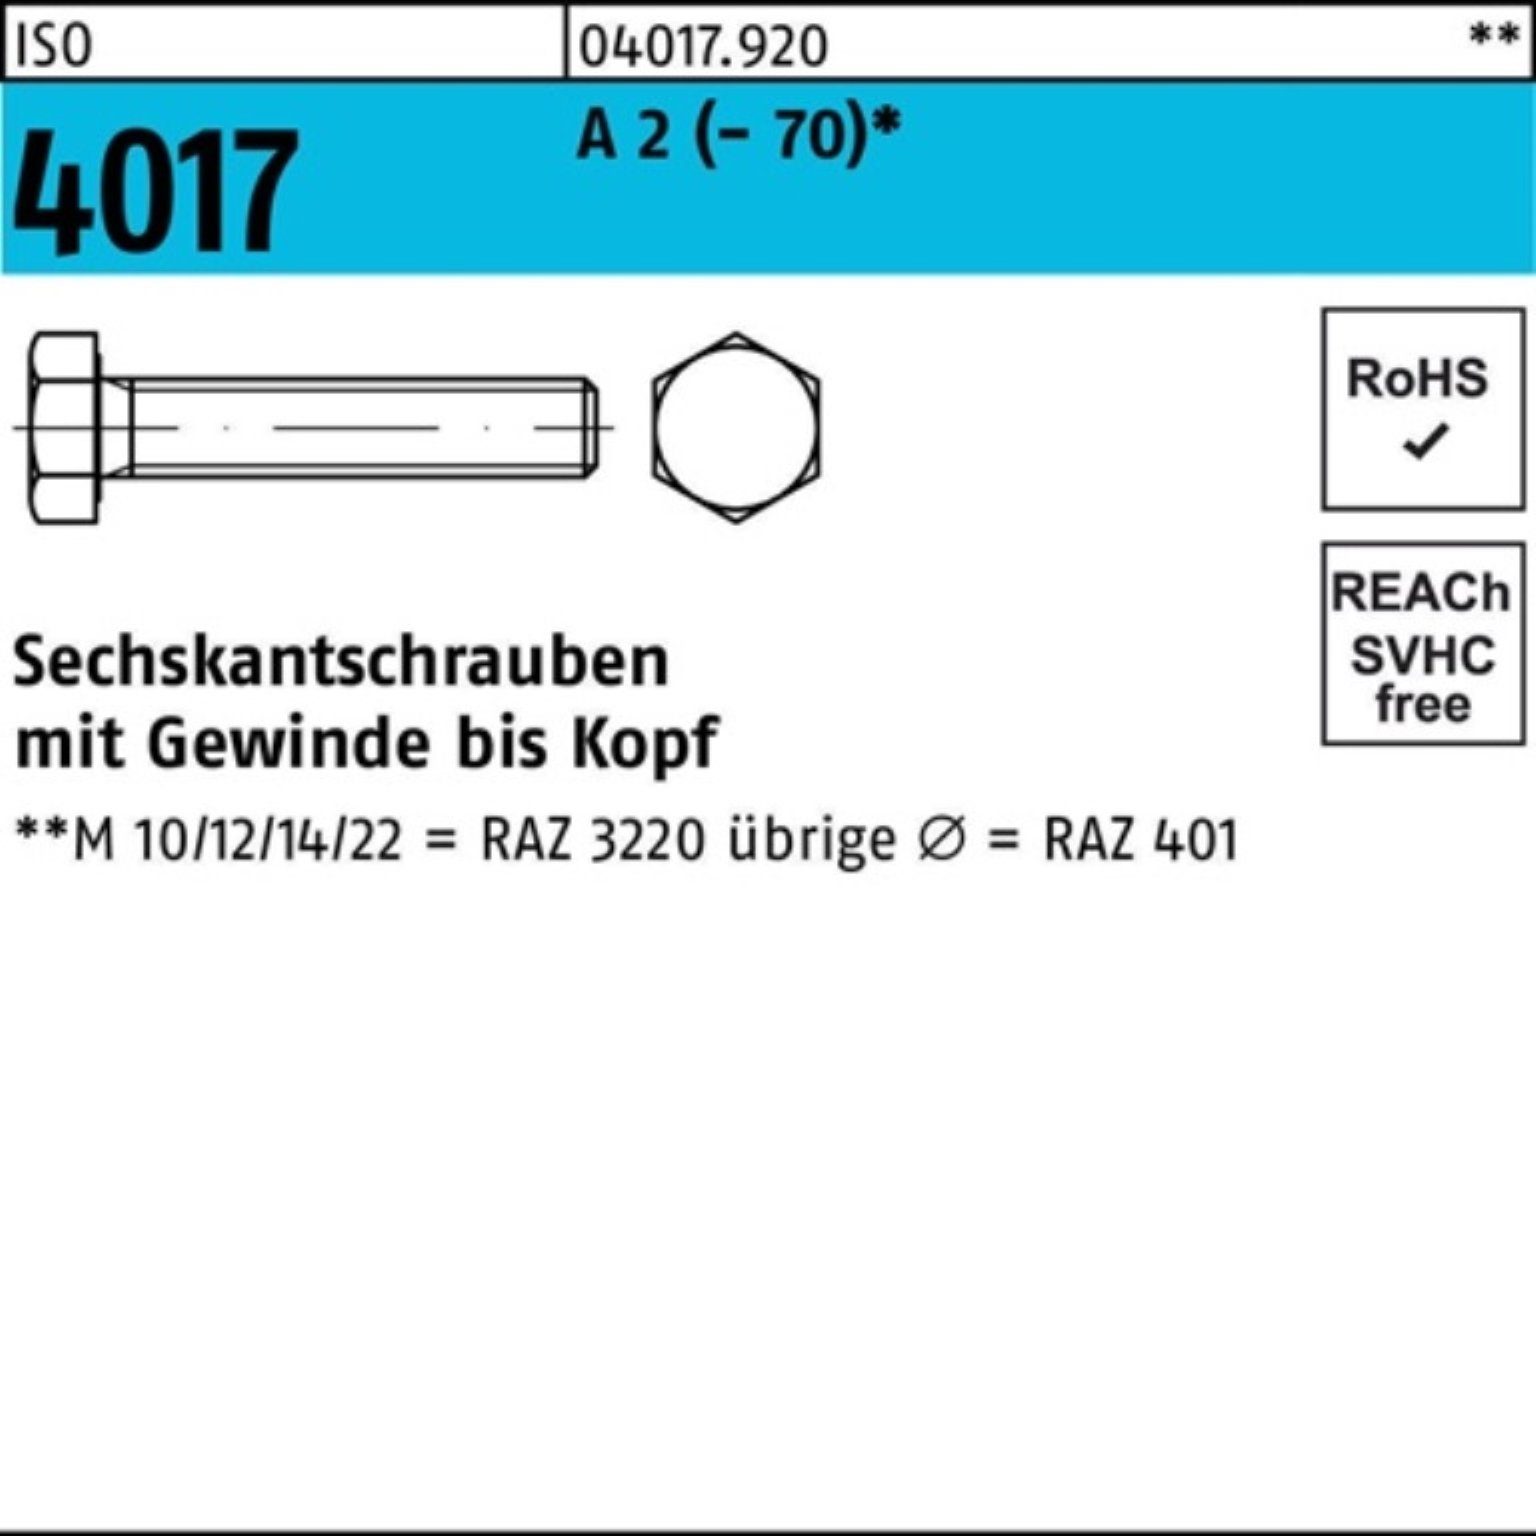 Bufab Sechskantschraube 100er Sechskantschraube M33x 80 Stück A 2 VG I Pack 1 (70) 4017 ISO